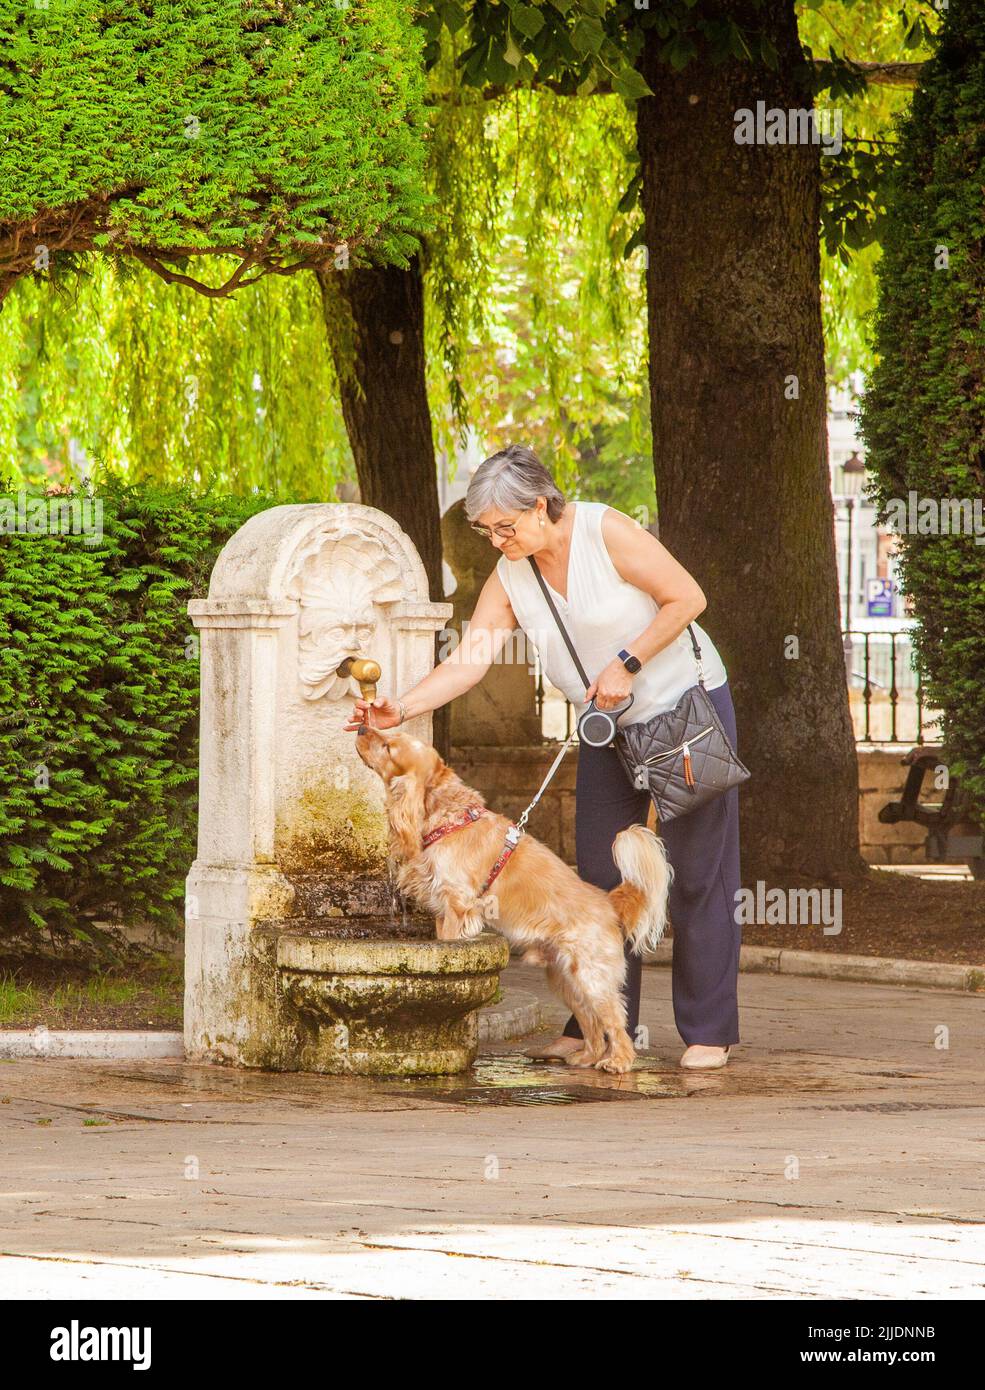 Chien buvant d'une fontaine dans la ville espagnole de Burgos Espagne Banque D'Images